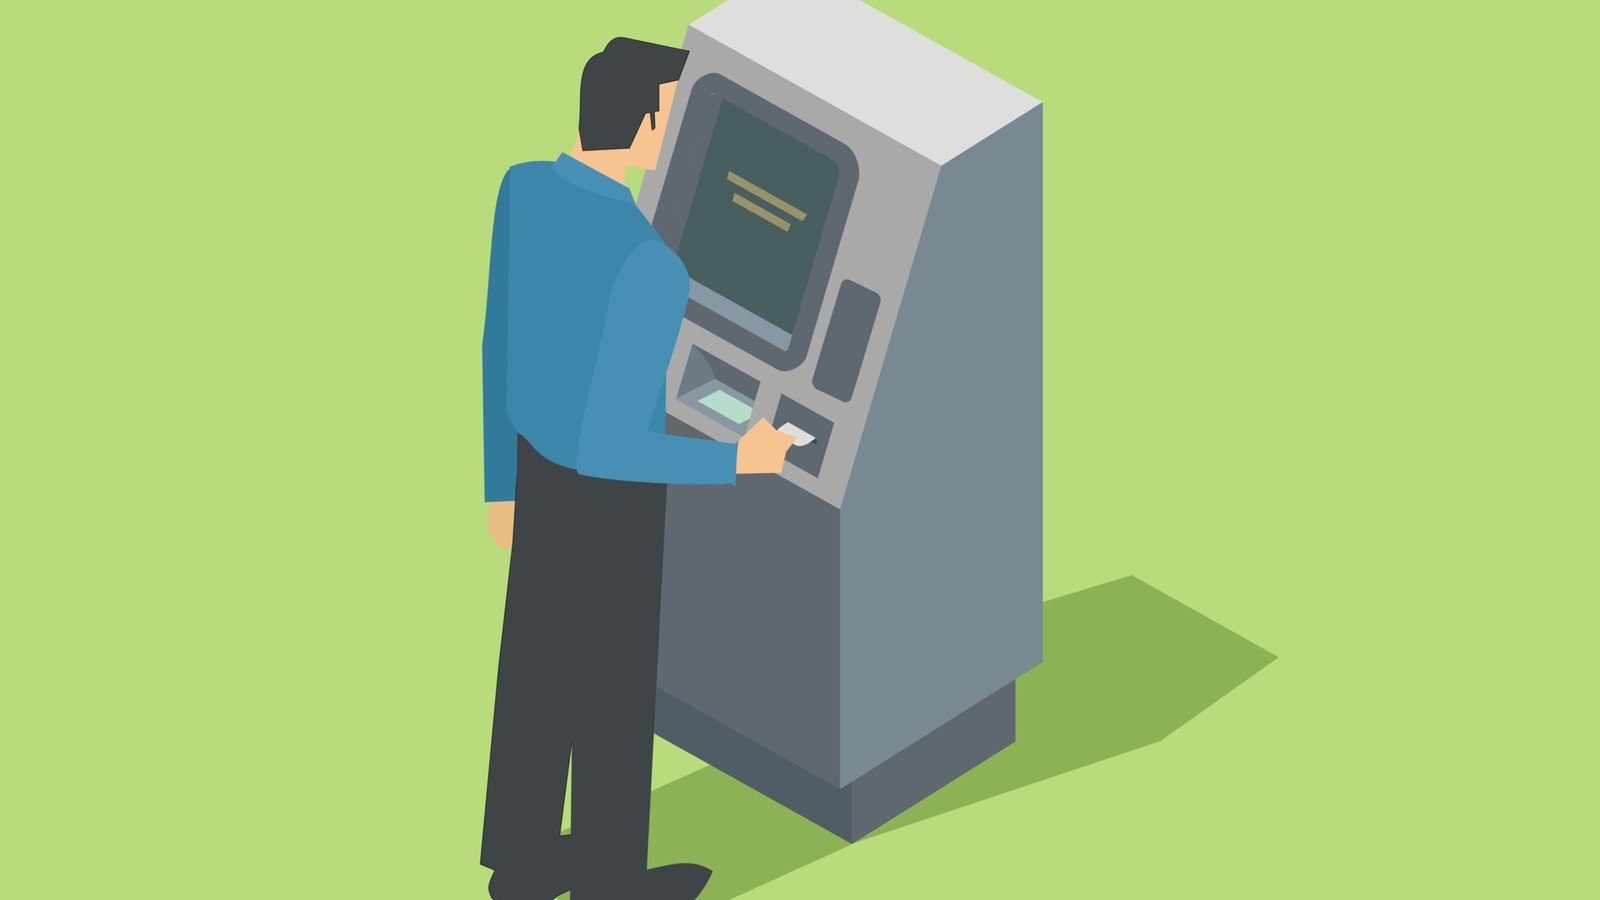 Люди активно используют банкоматы в повседневной жизни. Банкомат иллюстрация. Банкомат мультяшный. Человек у терминала. Банкомат арт.